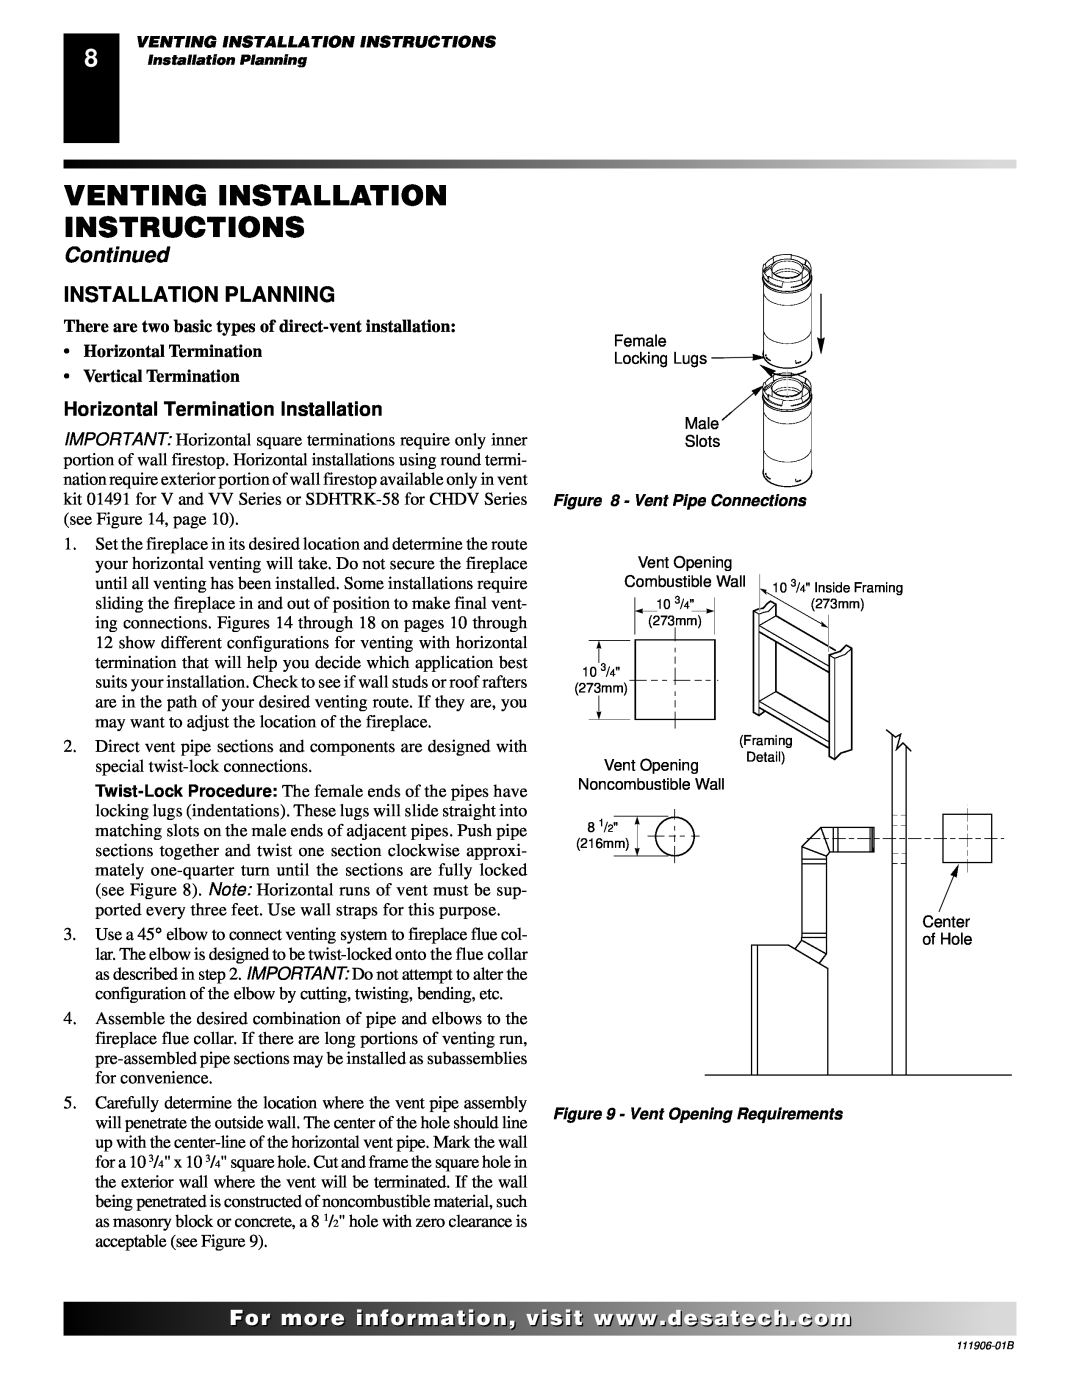 Desa (V)V42PA(1) Venting Installation Instructions, Continued, Installation Planning, Horizontal Termination Installation 